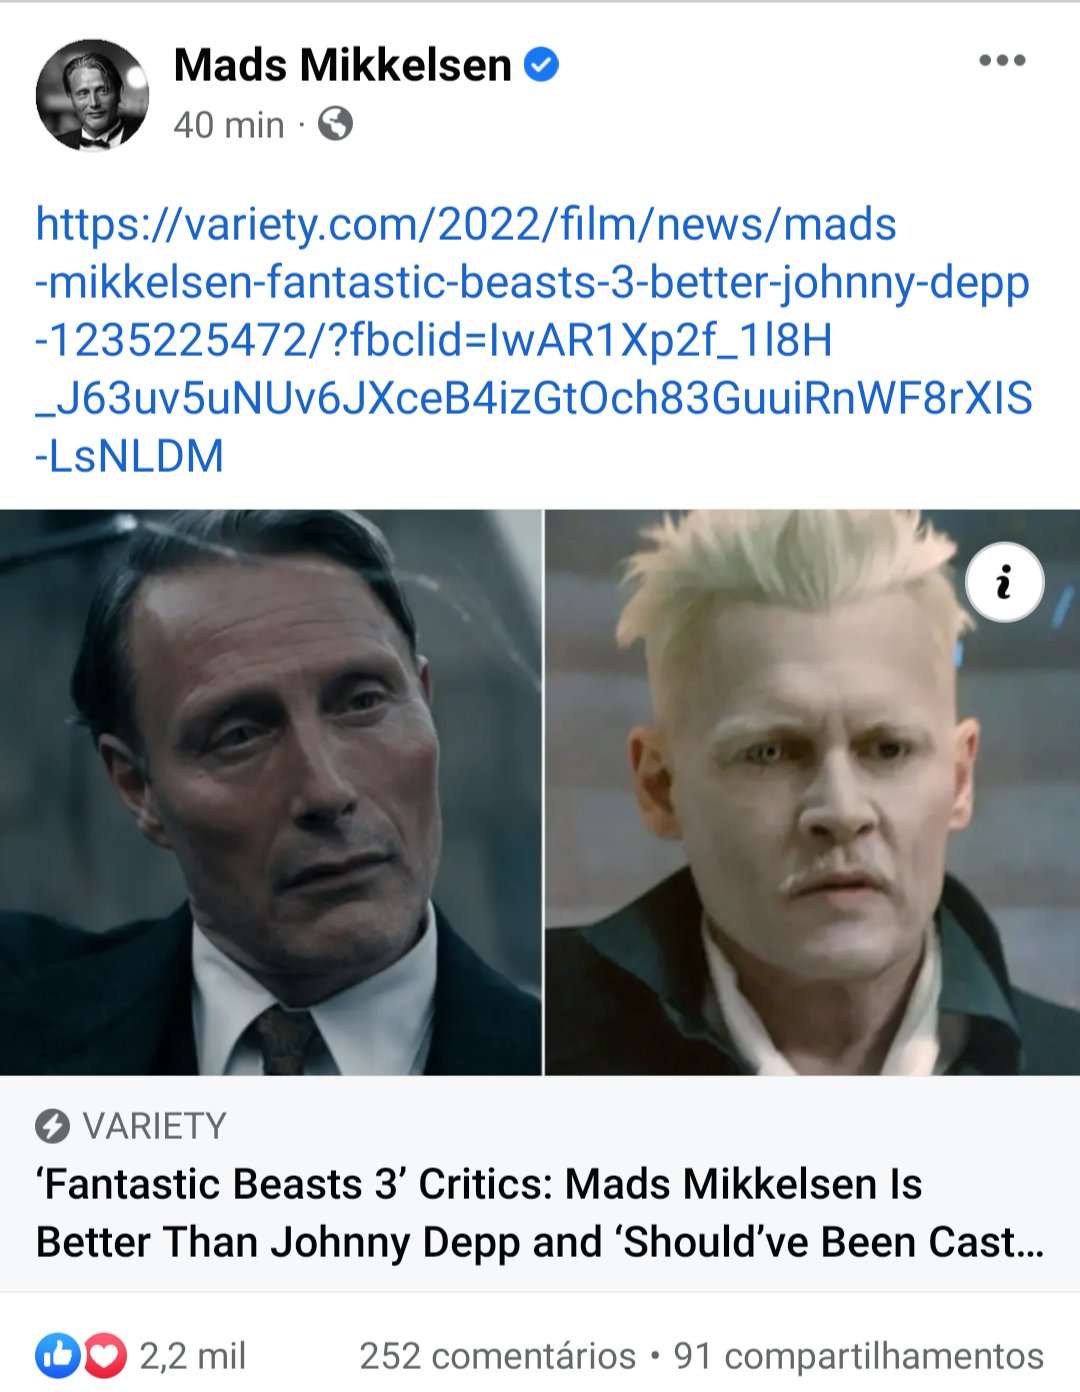 "Animais Fantásticos": Mads Mikkelsen compartilha matéria apontando-o como "melhor que Johnny Depp"